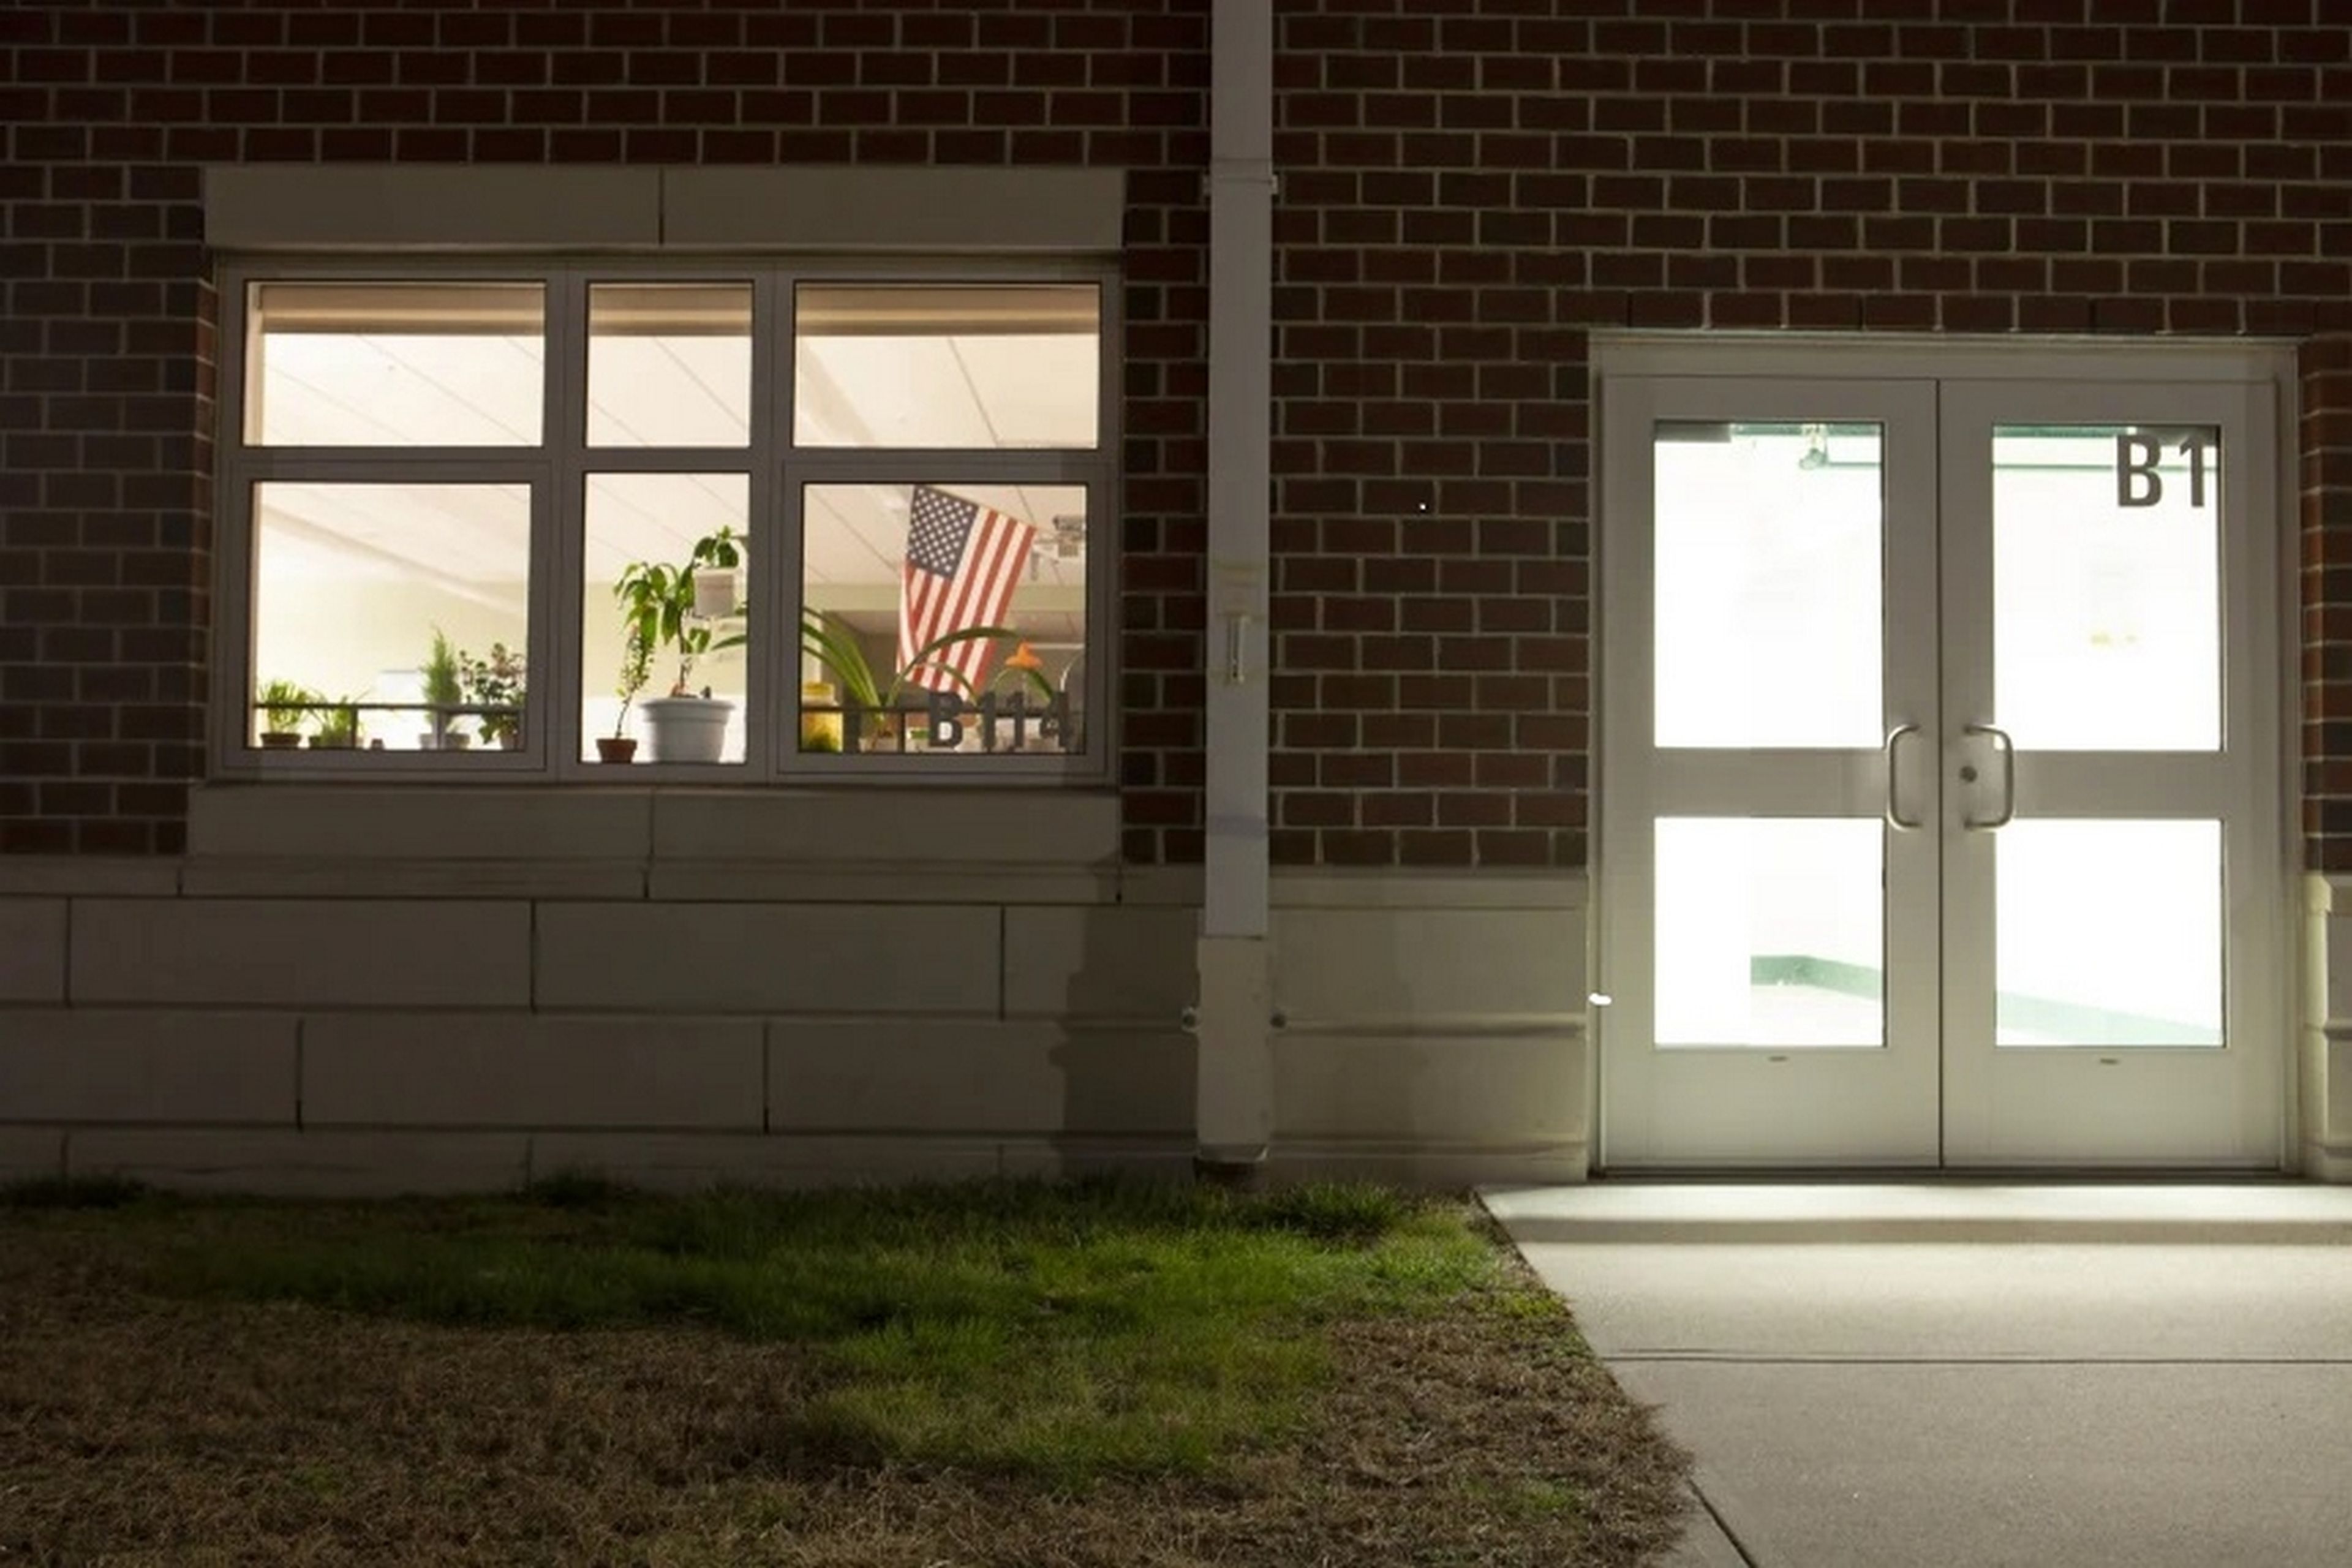 Un instituto de Massachusetts lleva año y medio con las luces inteligentes encendidas las 24 horas, porque no pueden apagarlas